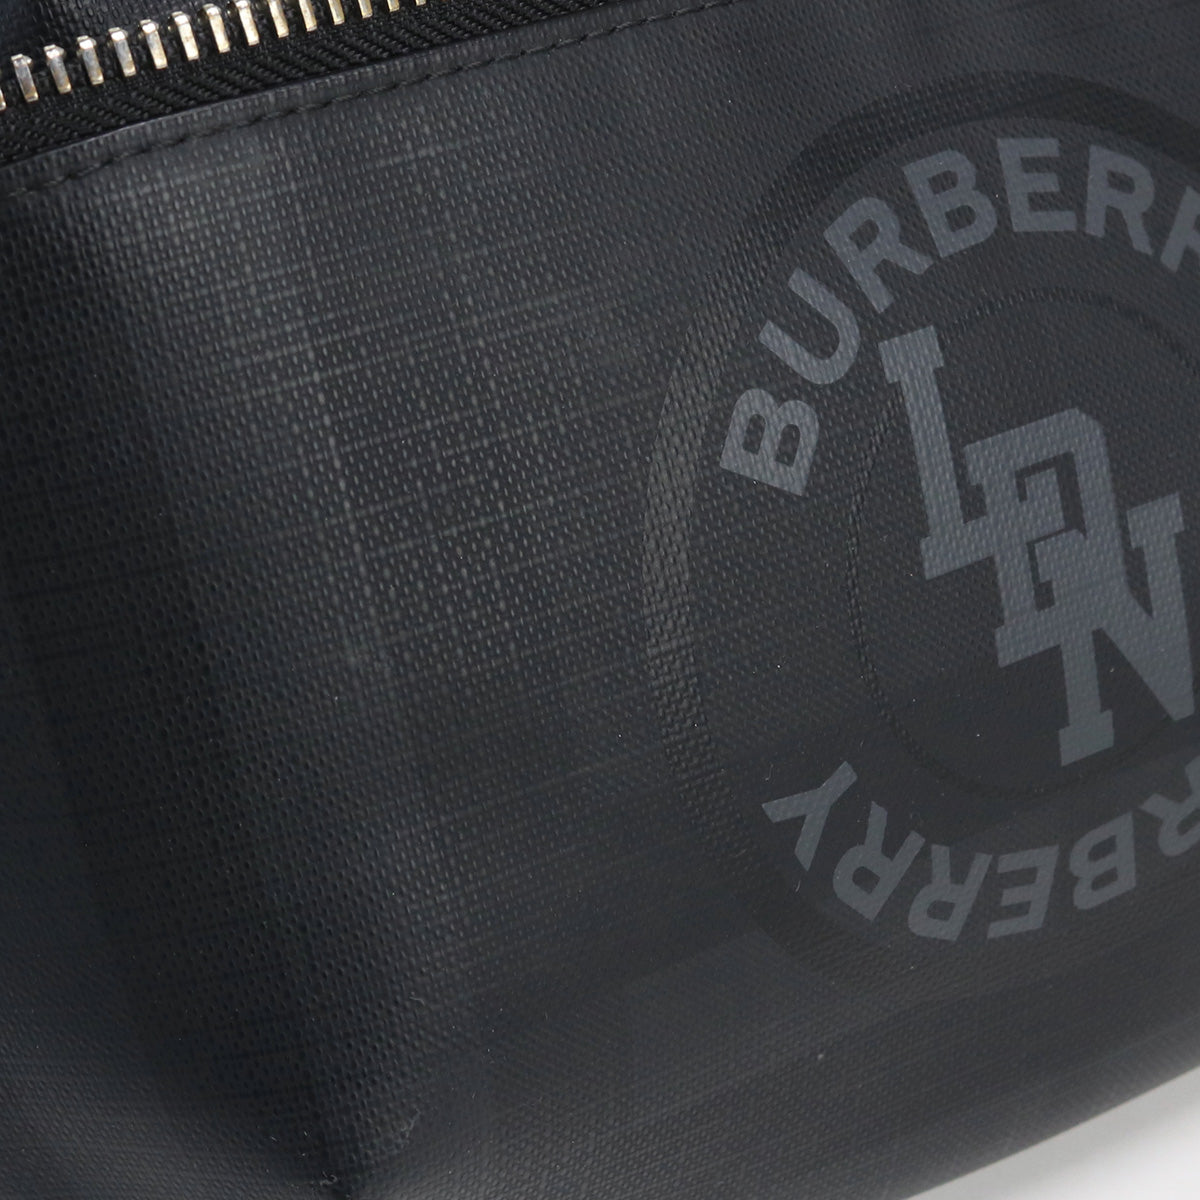 BURBERRY バーバリー ロゴグラフィッククロスボディ 8022517 ボディバッグ PVC【中古】 ユニセックス